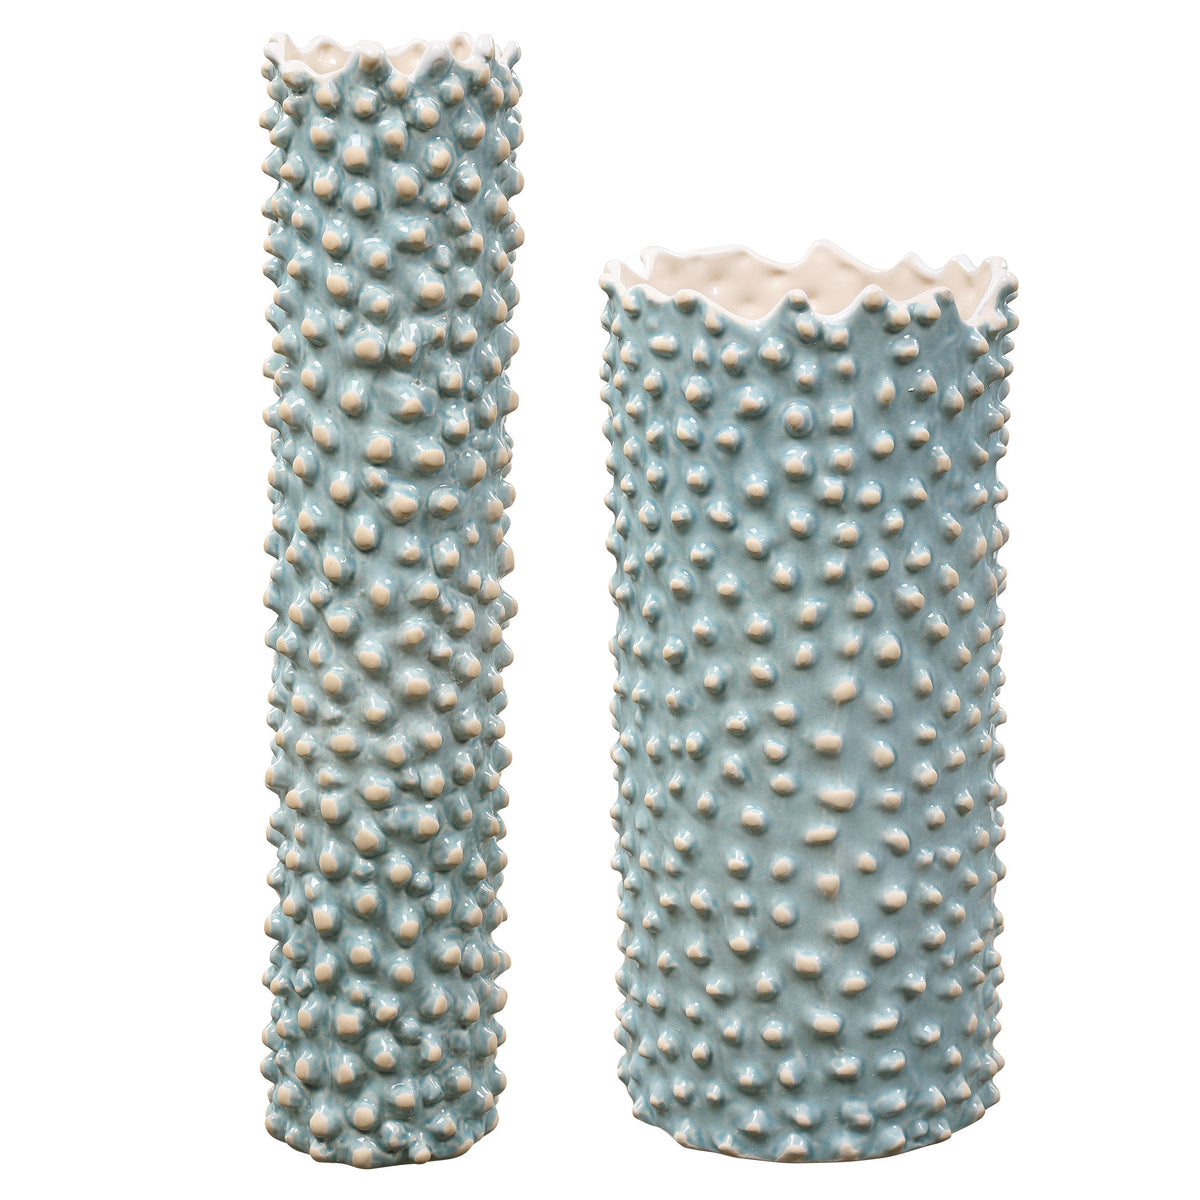 Ciji Aqua Ceramic Vases, S/2